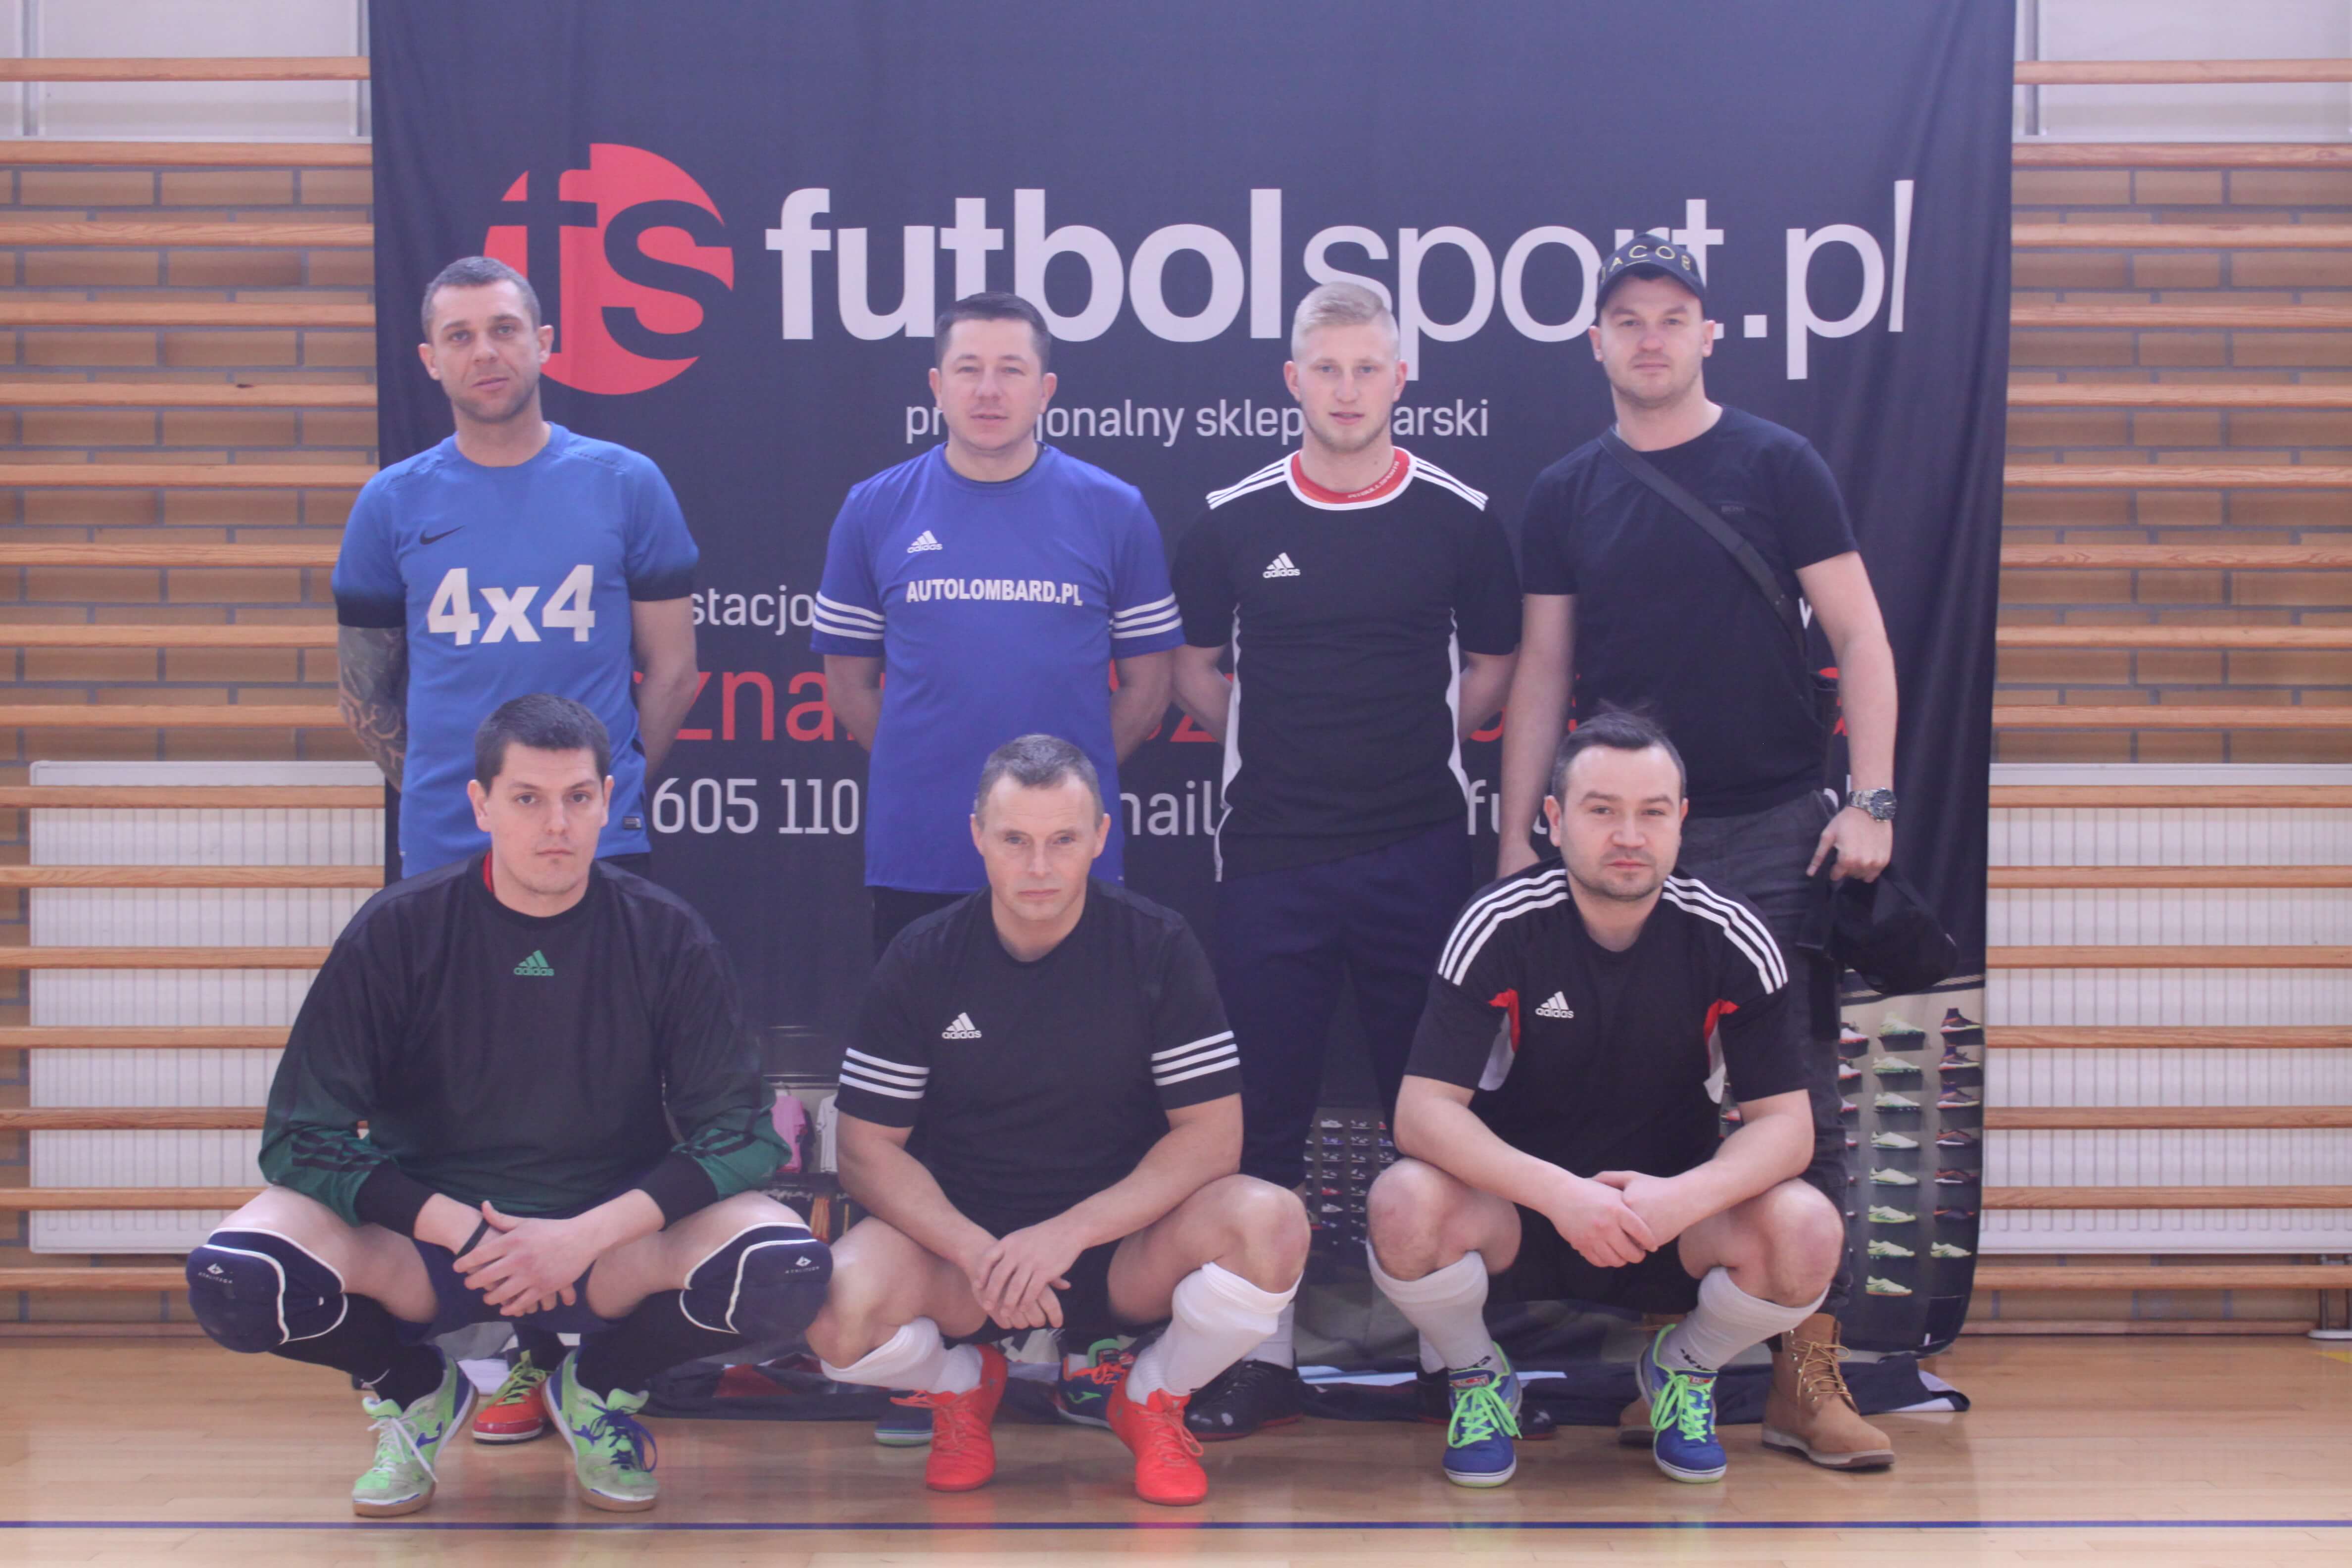 Trans Auto Service zwycięża w futbolsport.pl Cup 2019